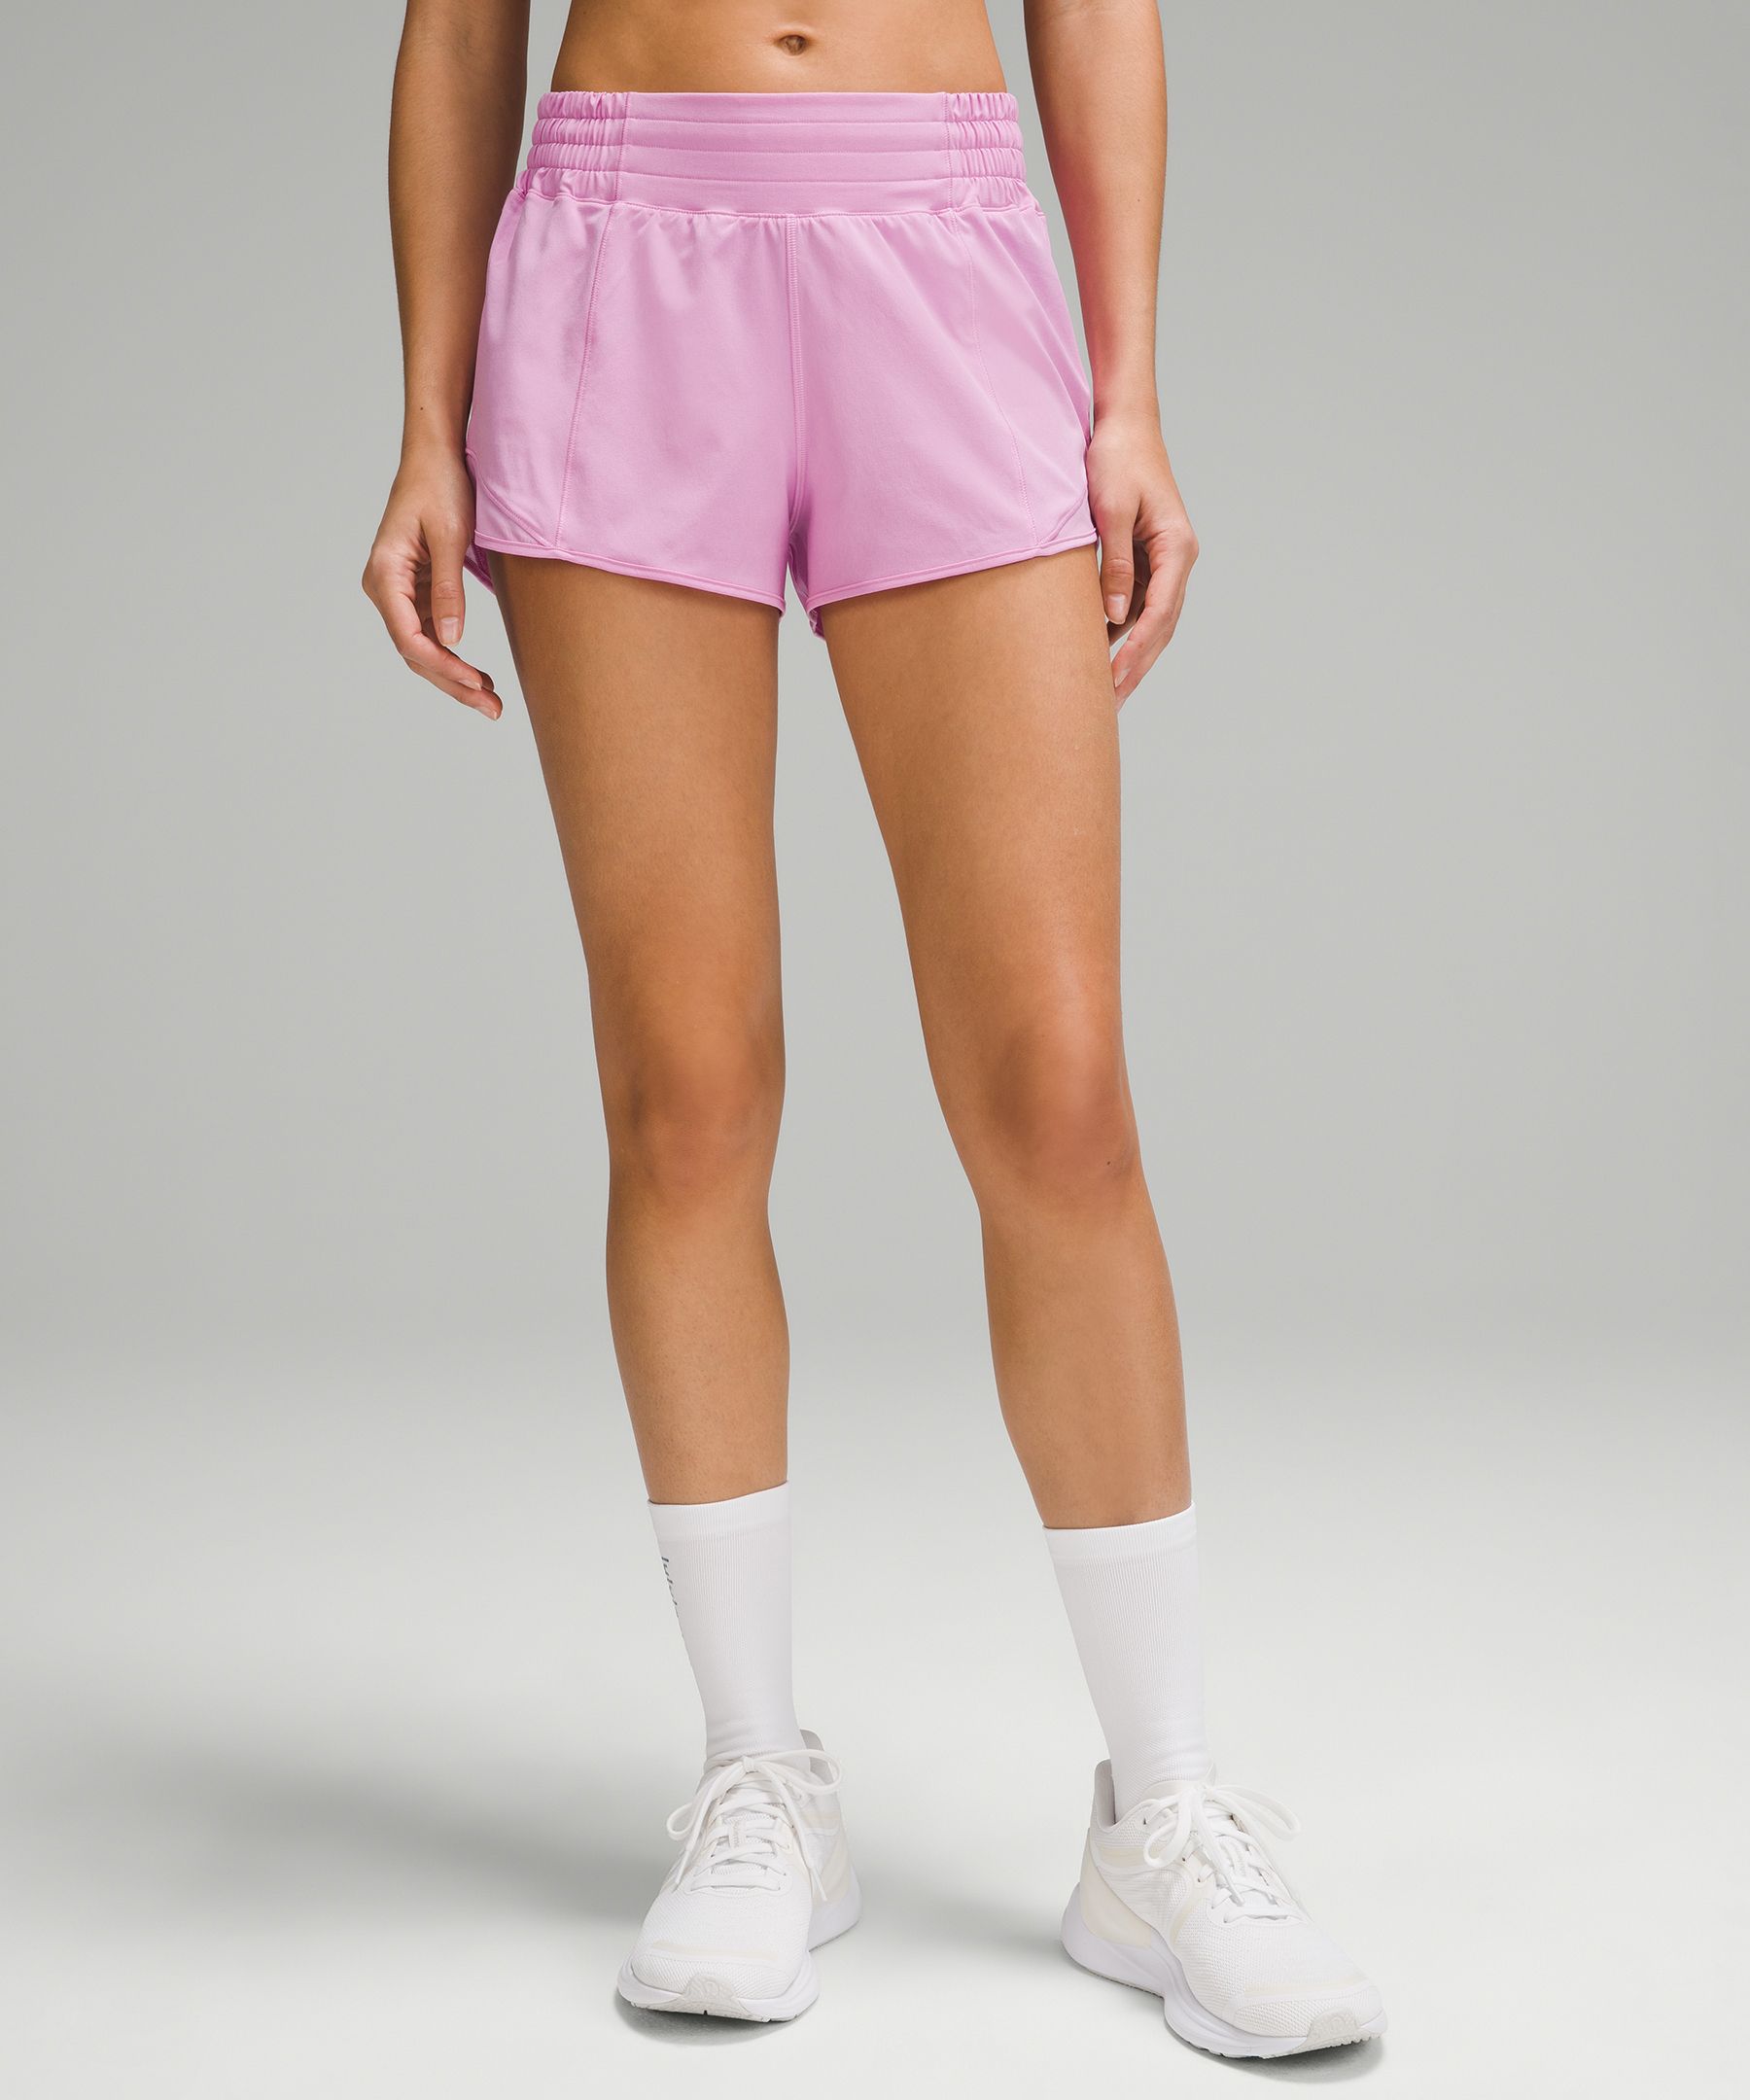 Lululemon Hotty Hot High-rise Lined Shorts 2.5"